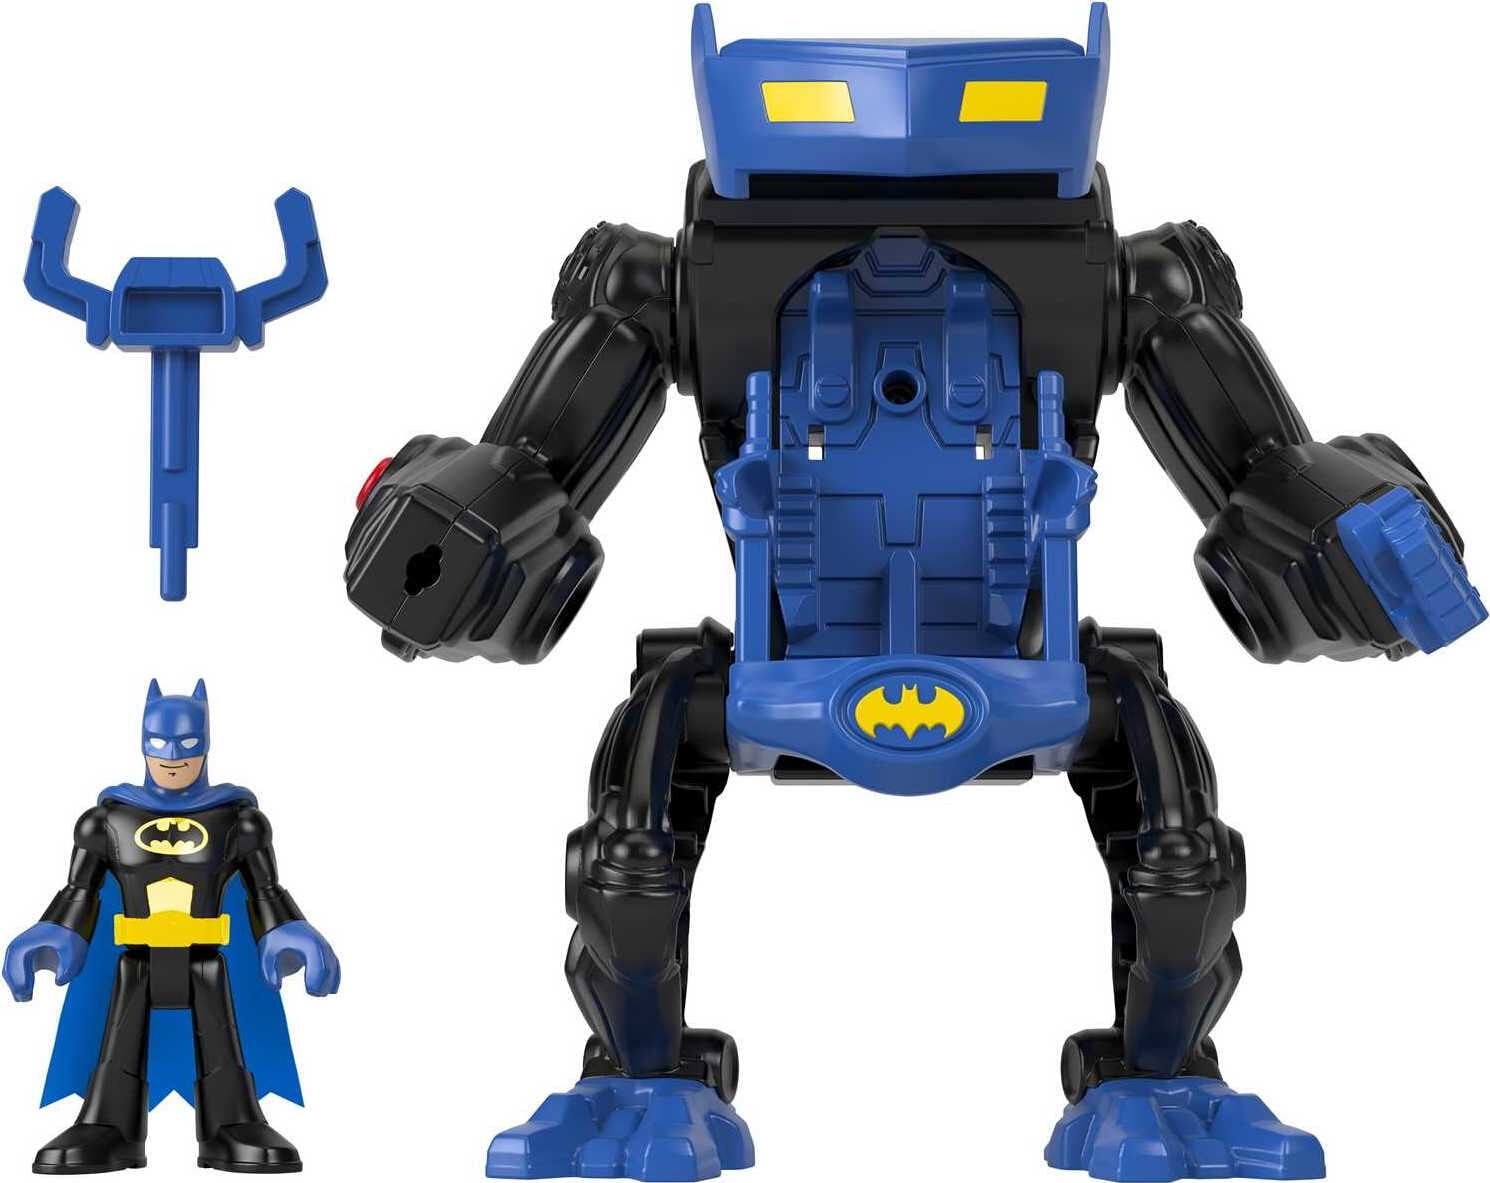 Imaginext DC Super Friends Batman Battling Robot, 3-Piece Figure Set with Lights for Preschool Kids